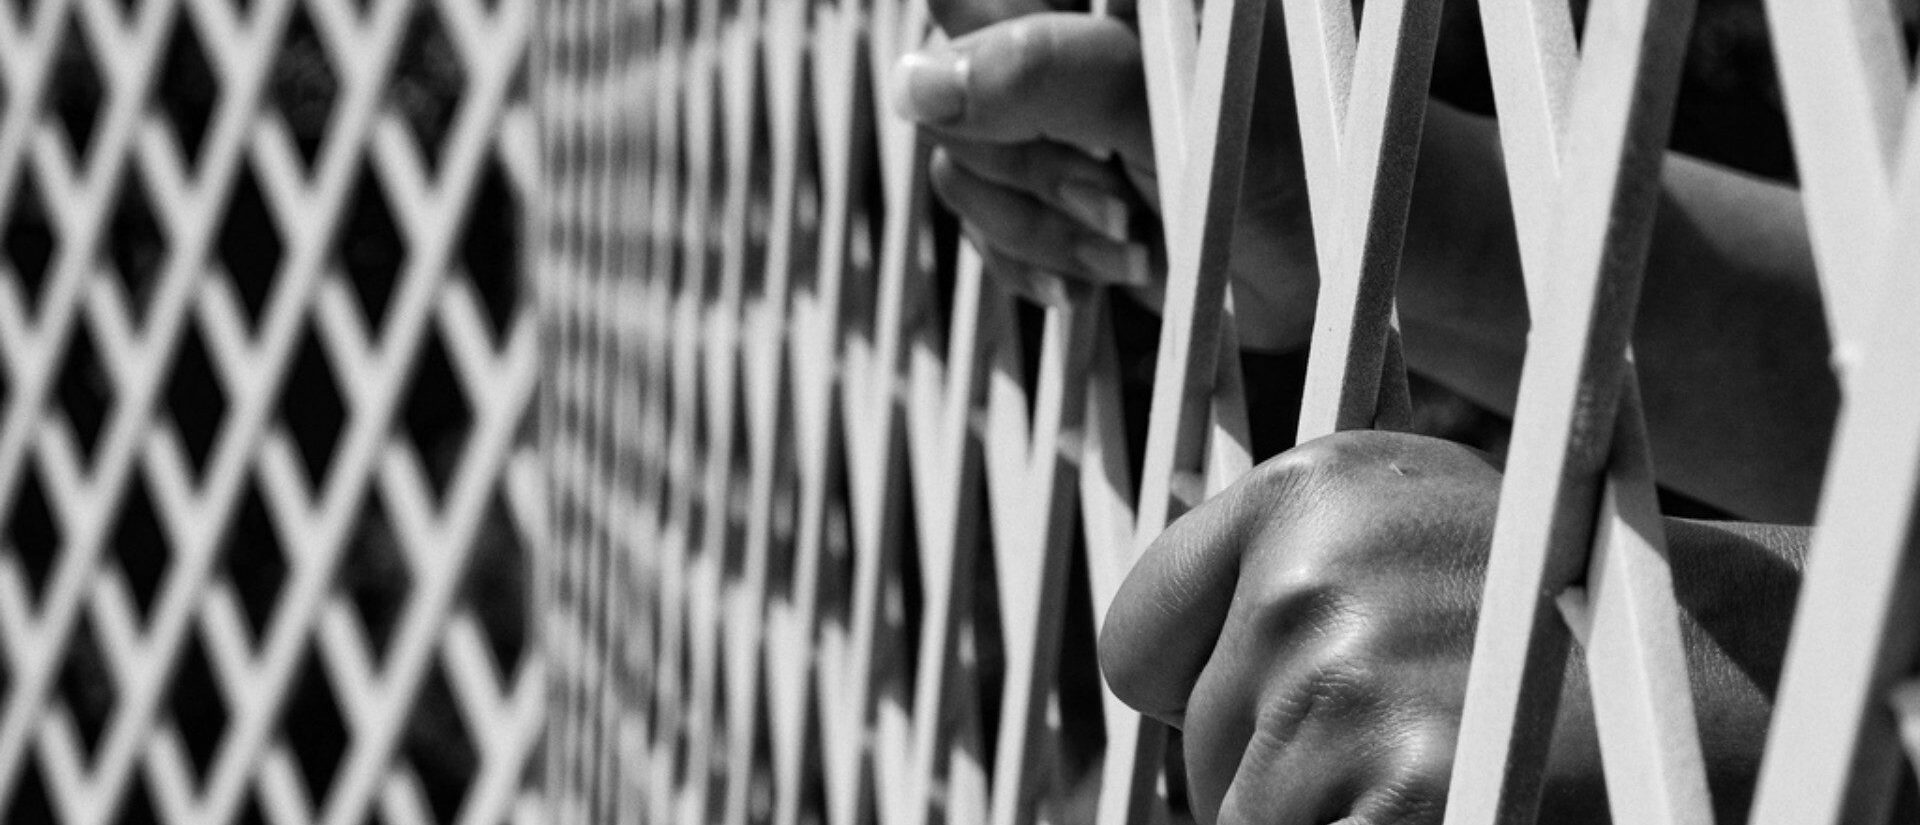 La situation dans les prisons argentines devient de plus en plus précaire | © Photo d'illustration:Tiago Pinheiro/Flickr/CC BY-NC-ND 2.0